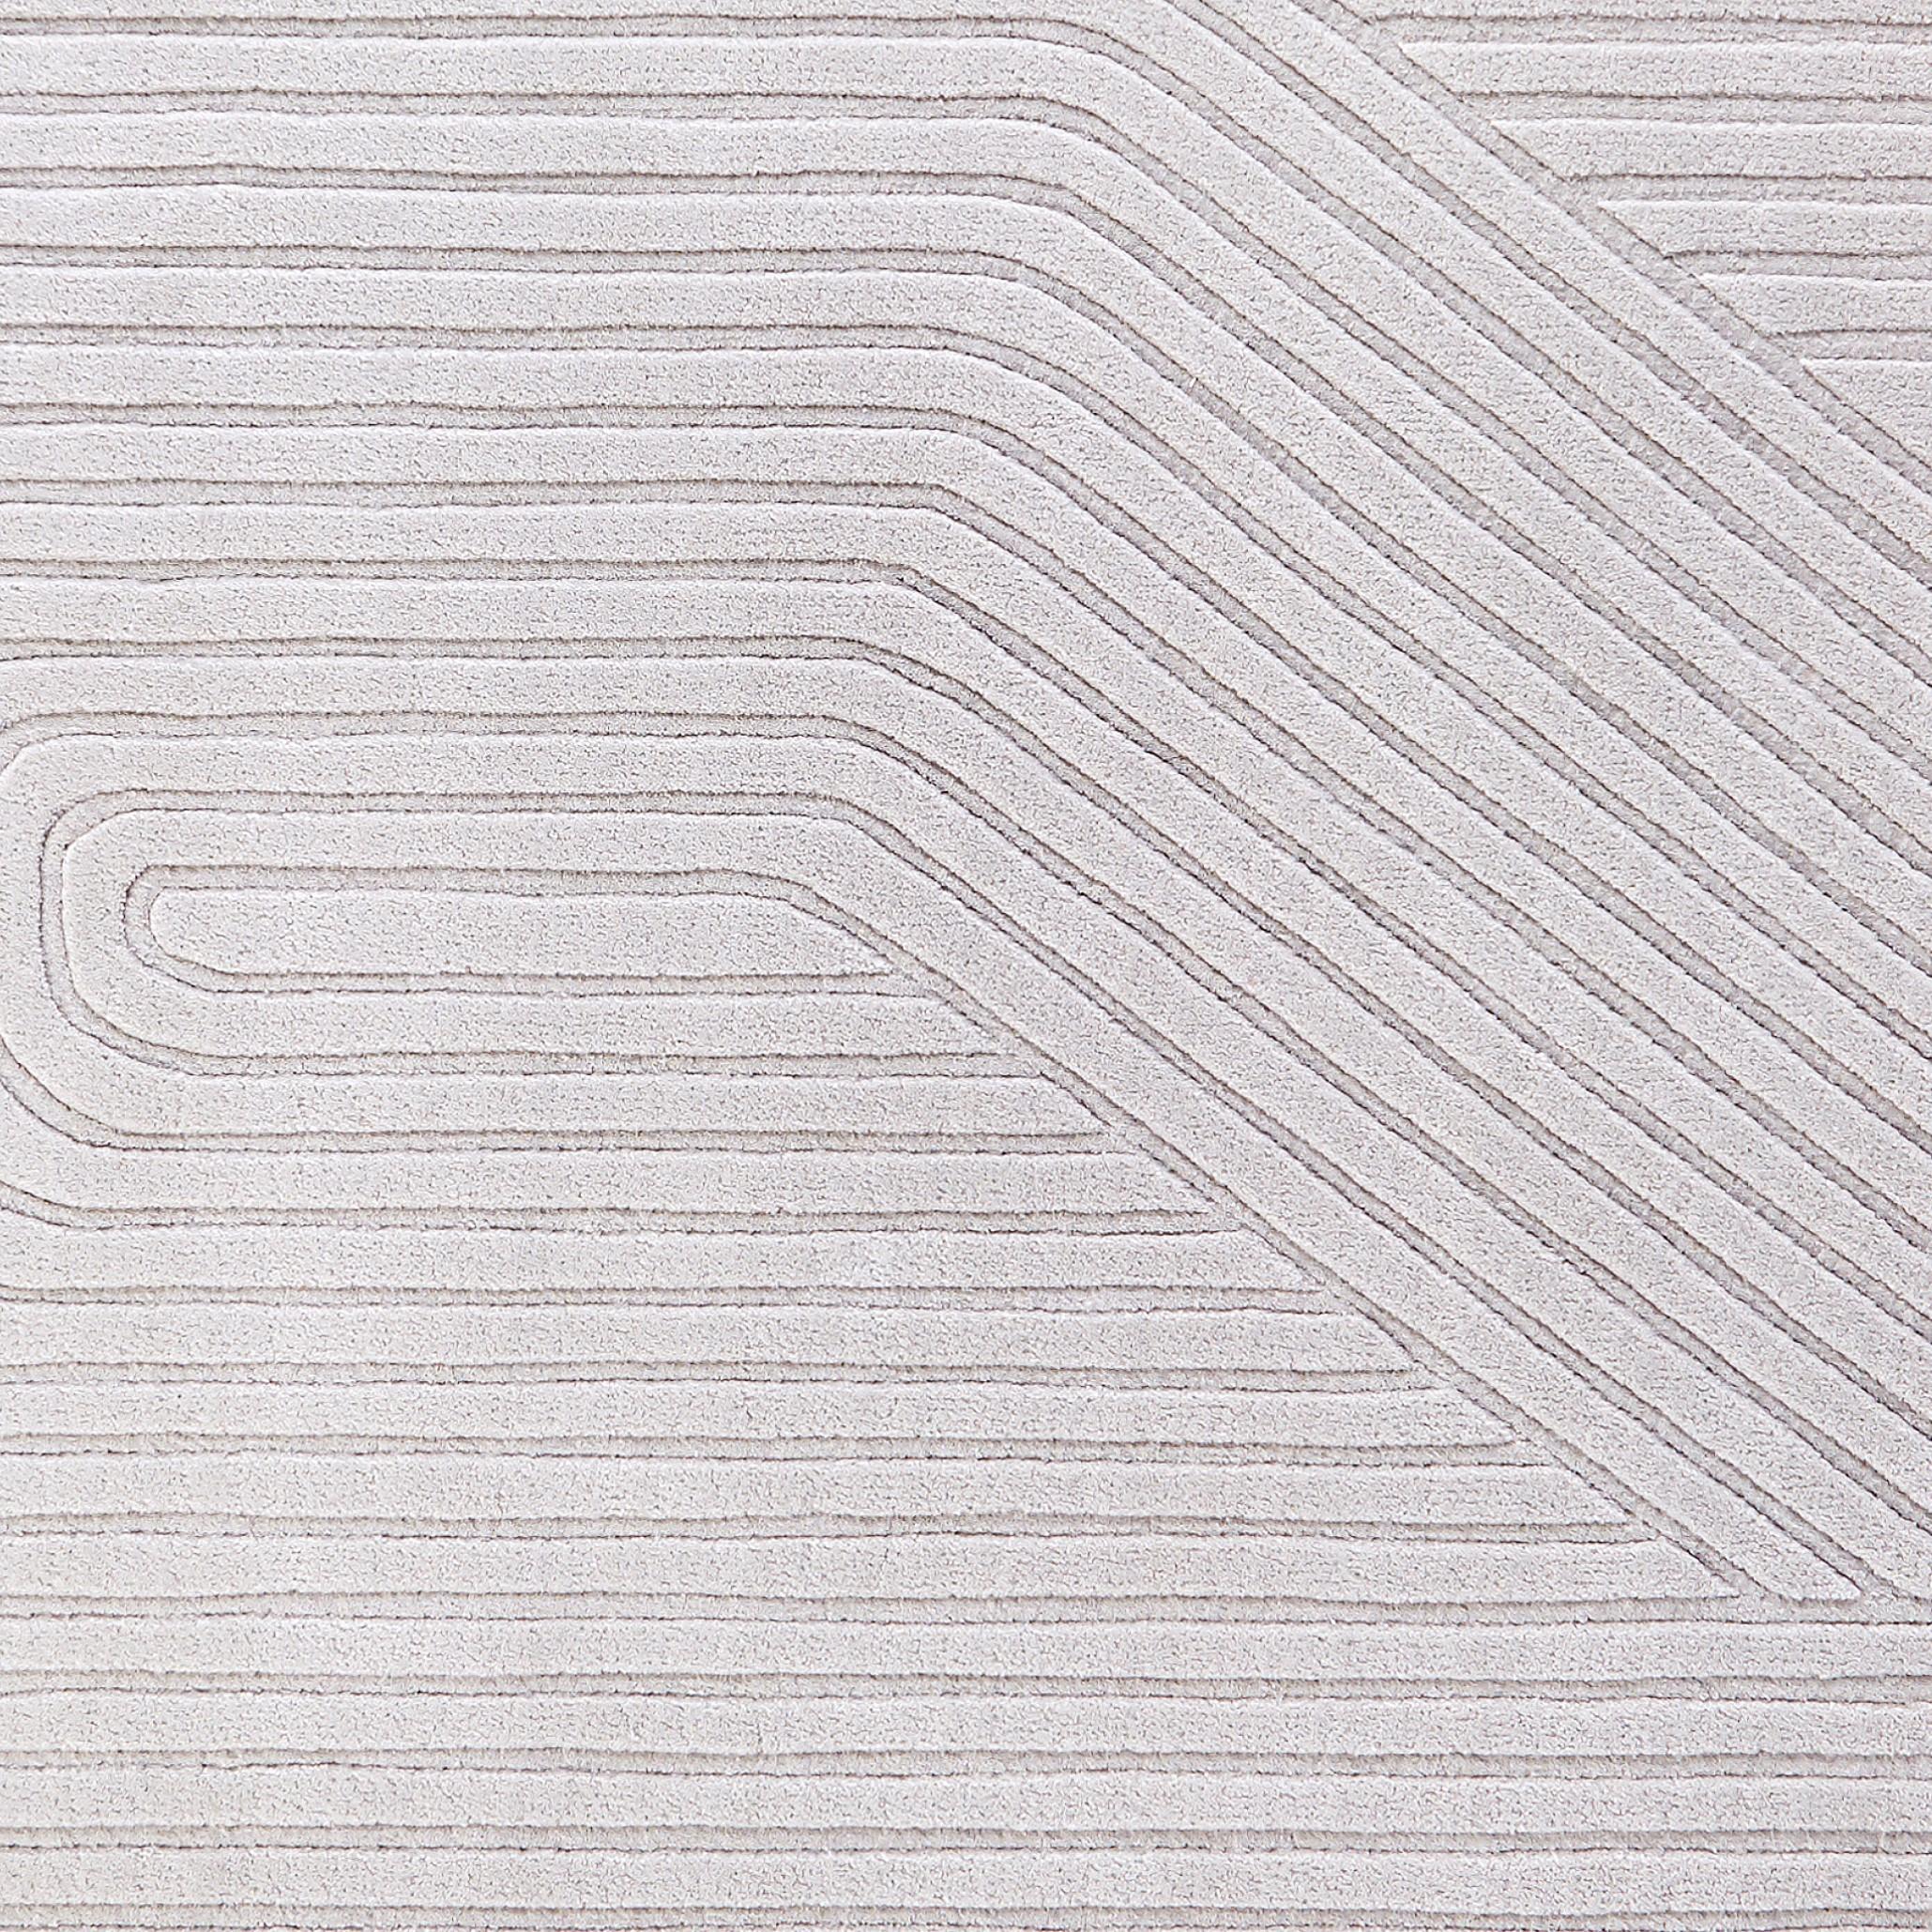 Tapis gris irrégulier tufté à la main par Hatsu.
Dimensions : D 179 x L 94 cm 
MATERIAL : laine

Hatsu est un studio de design basé à Mumbai qui crée des éclairages modernes, uniques et immédiatement reconnaissables. Nous avons commencé avec